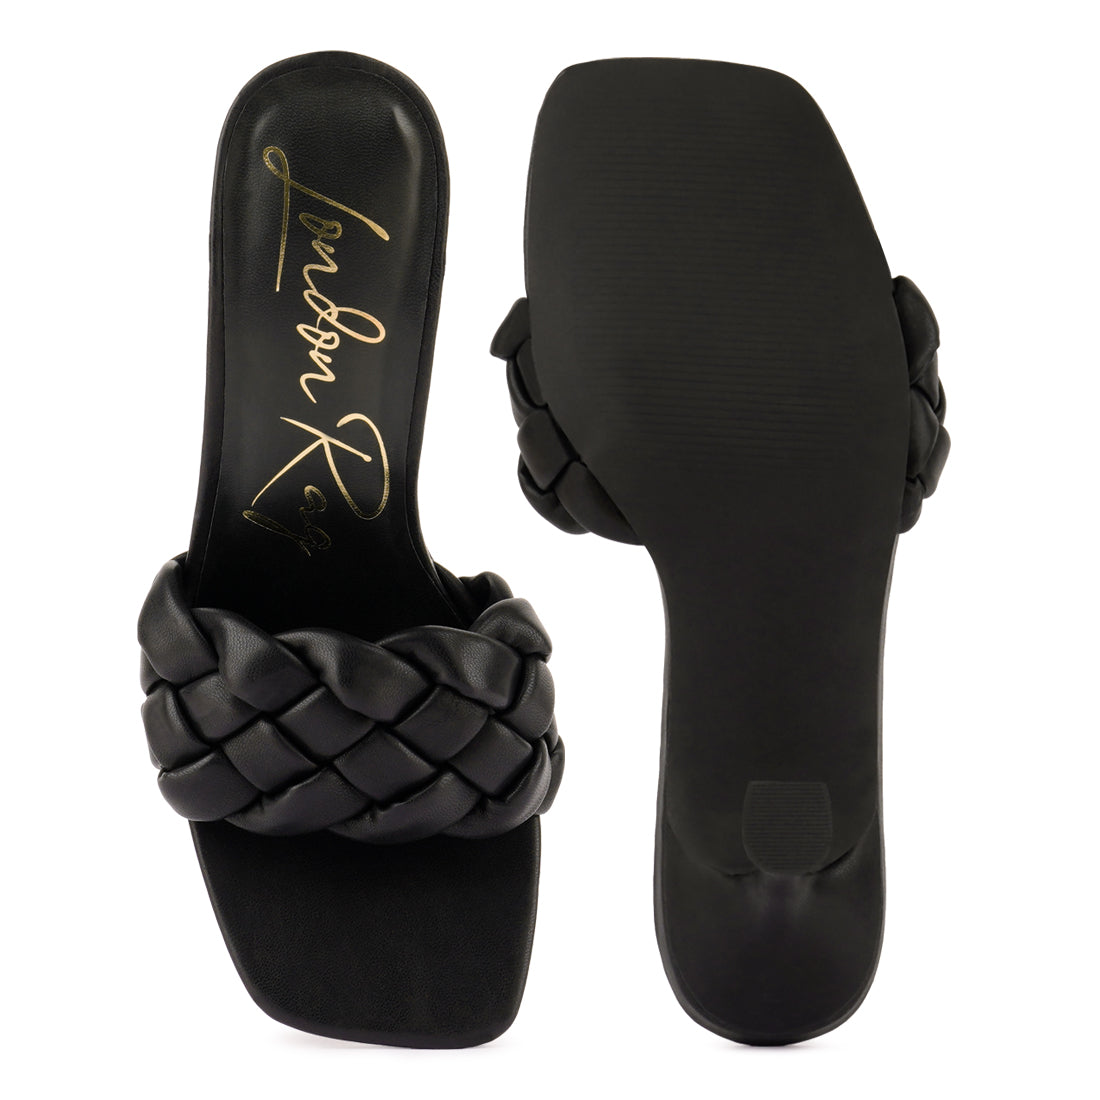 Black Woven Strap Square Toe Heeled Sandal